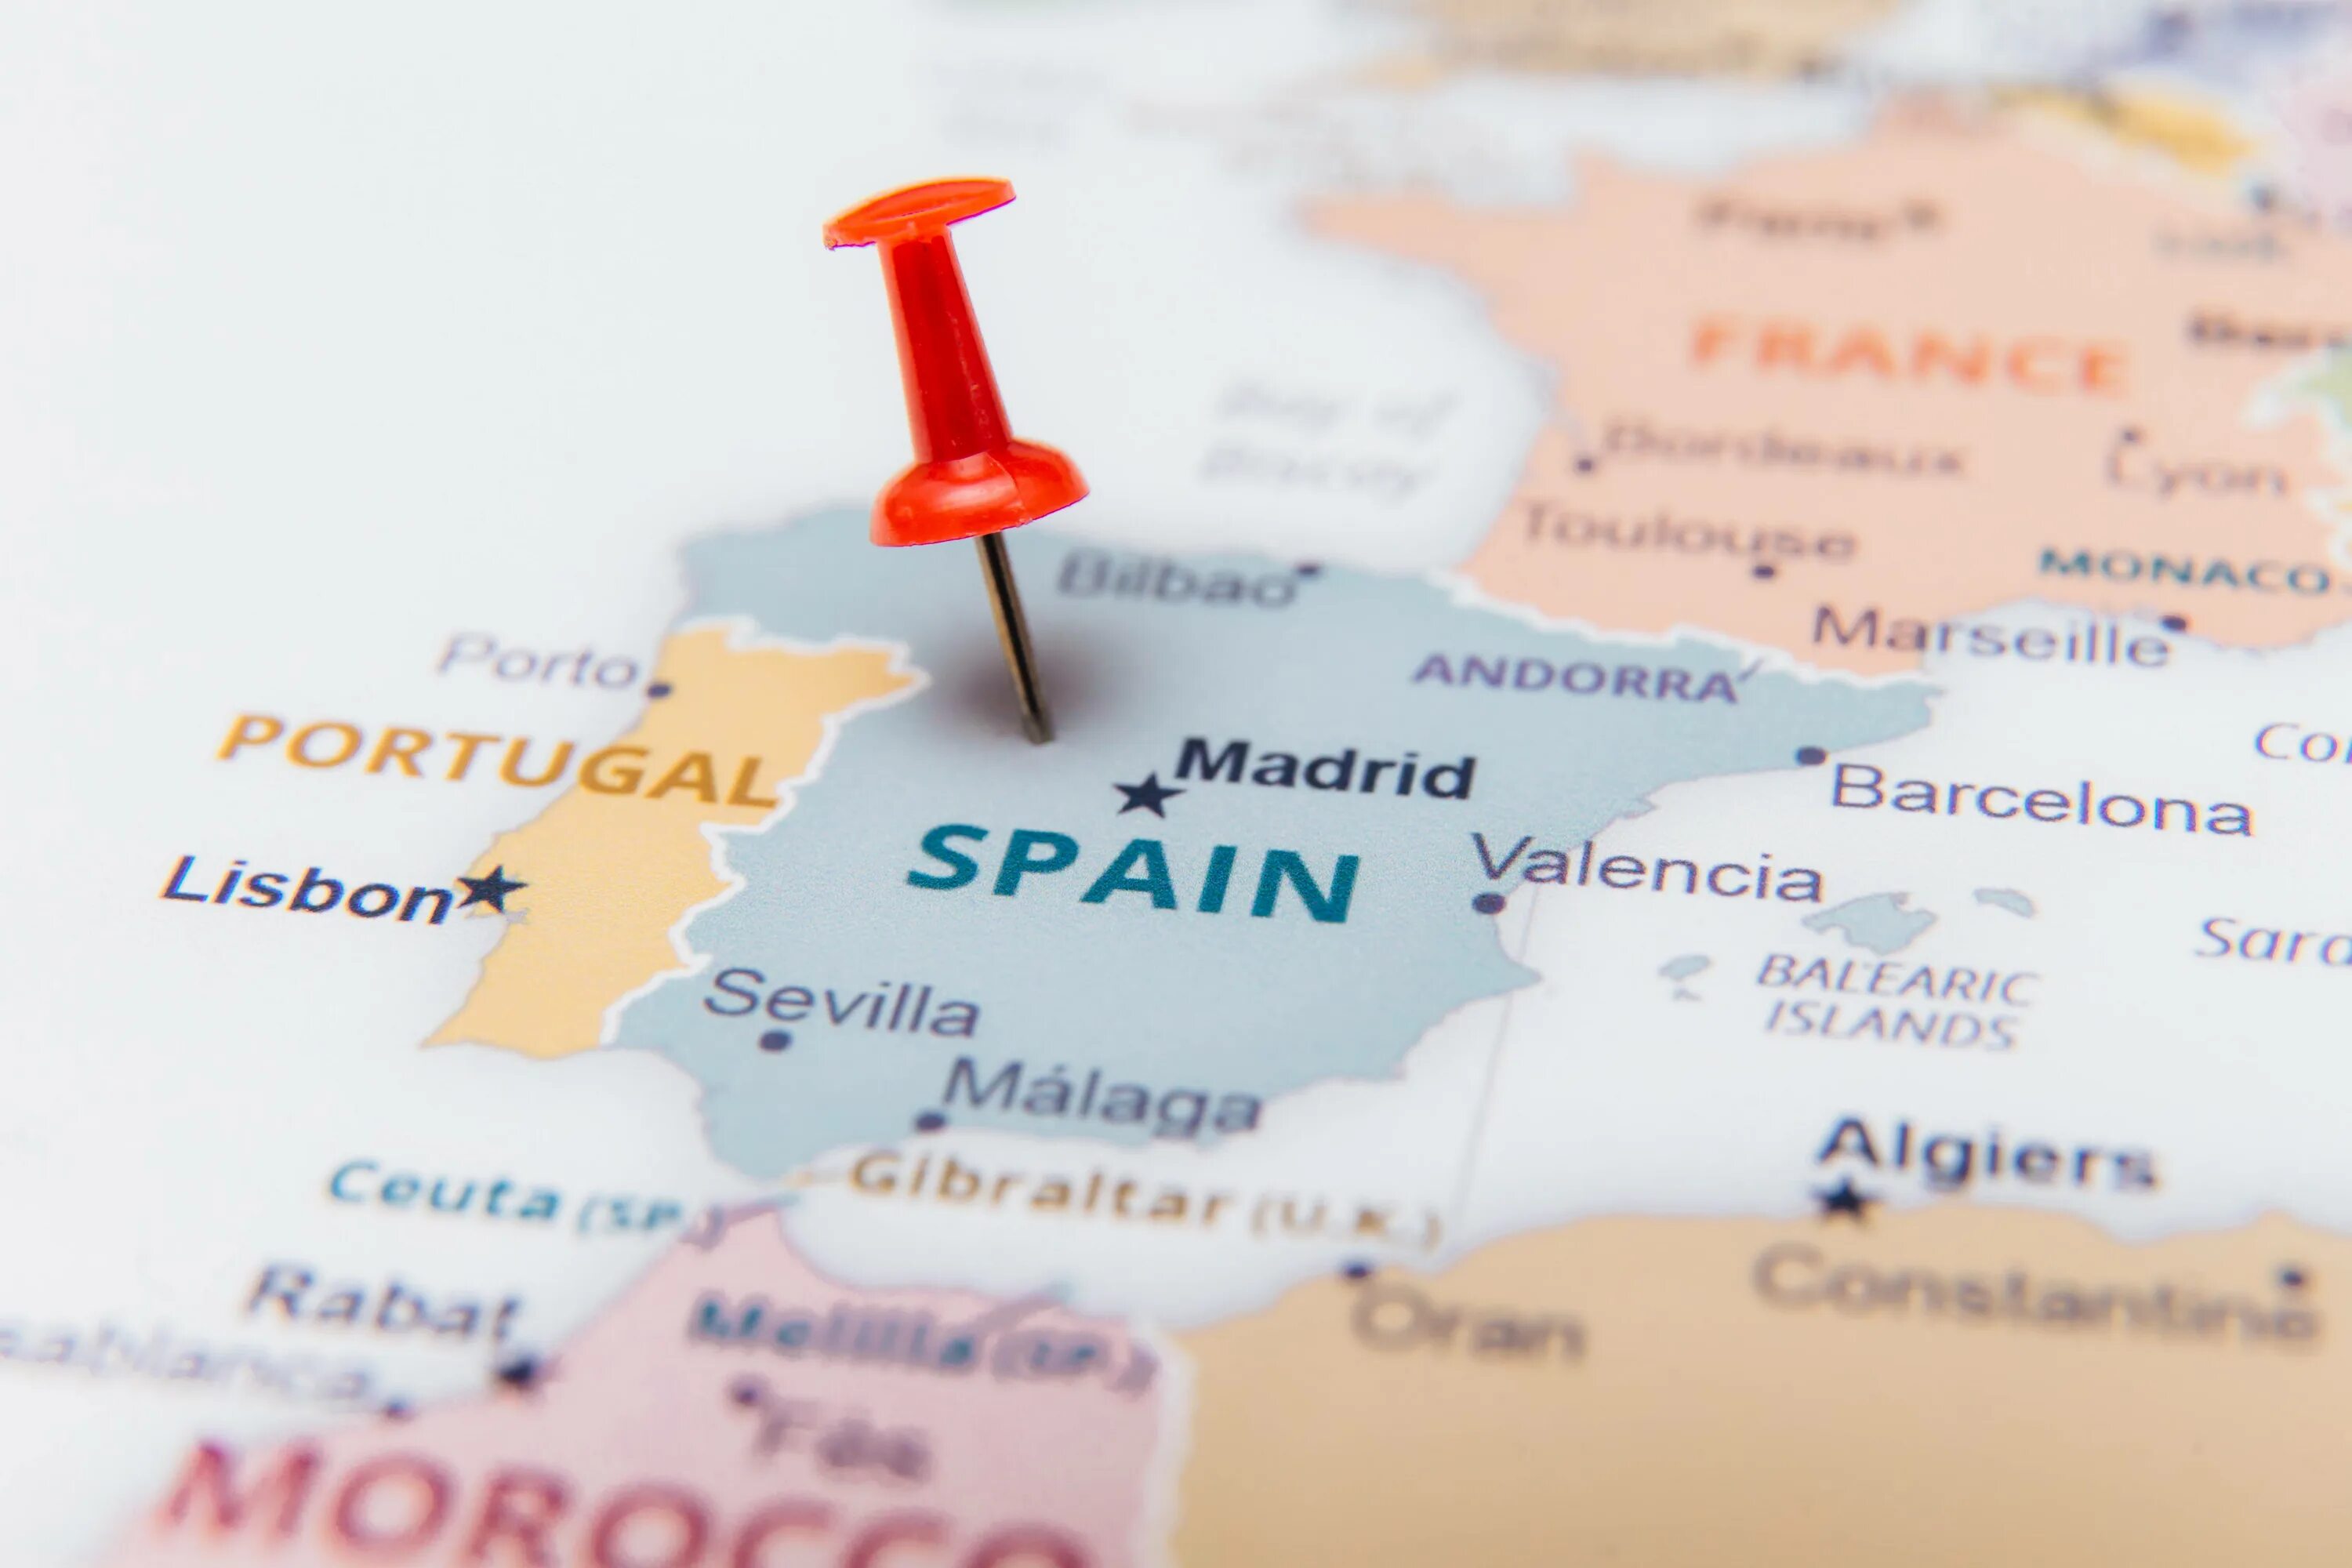 Жизнь по испански. ВНЖ инвестора в Испании. Законодательство Испании. Виза в Испанию. Испания инвестиции.